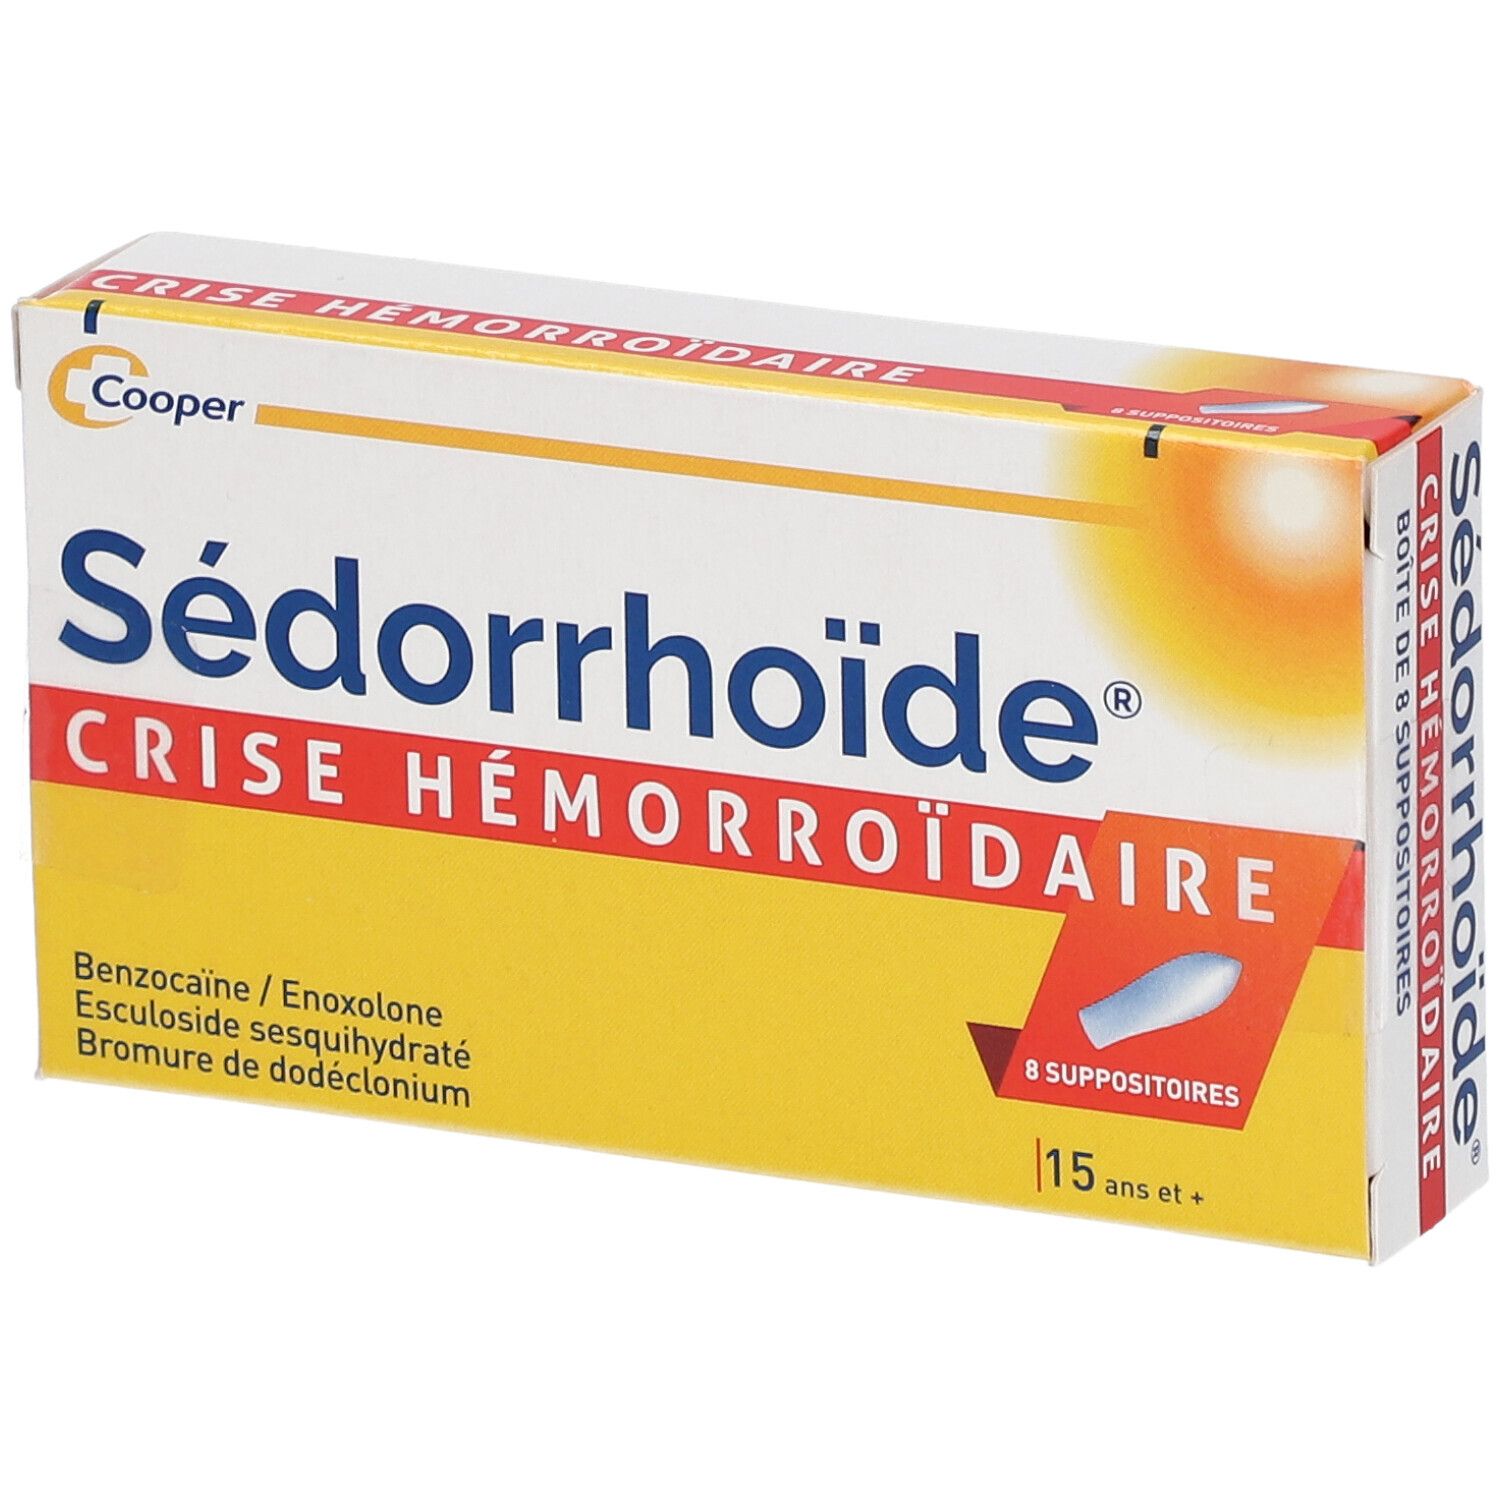 Sédorrhoide® crise hémorroidaire